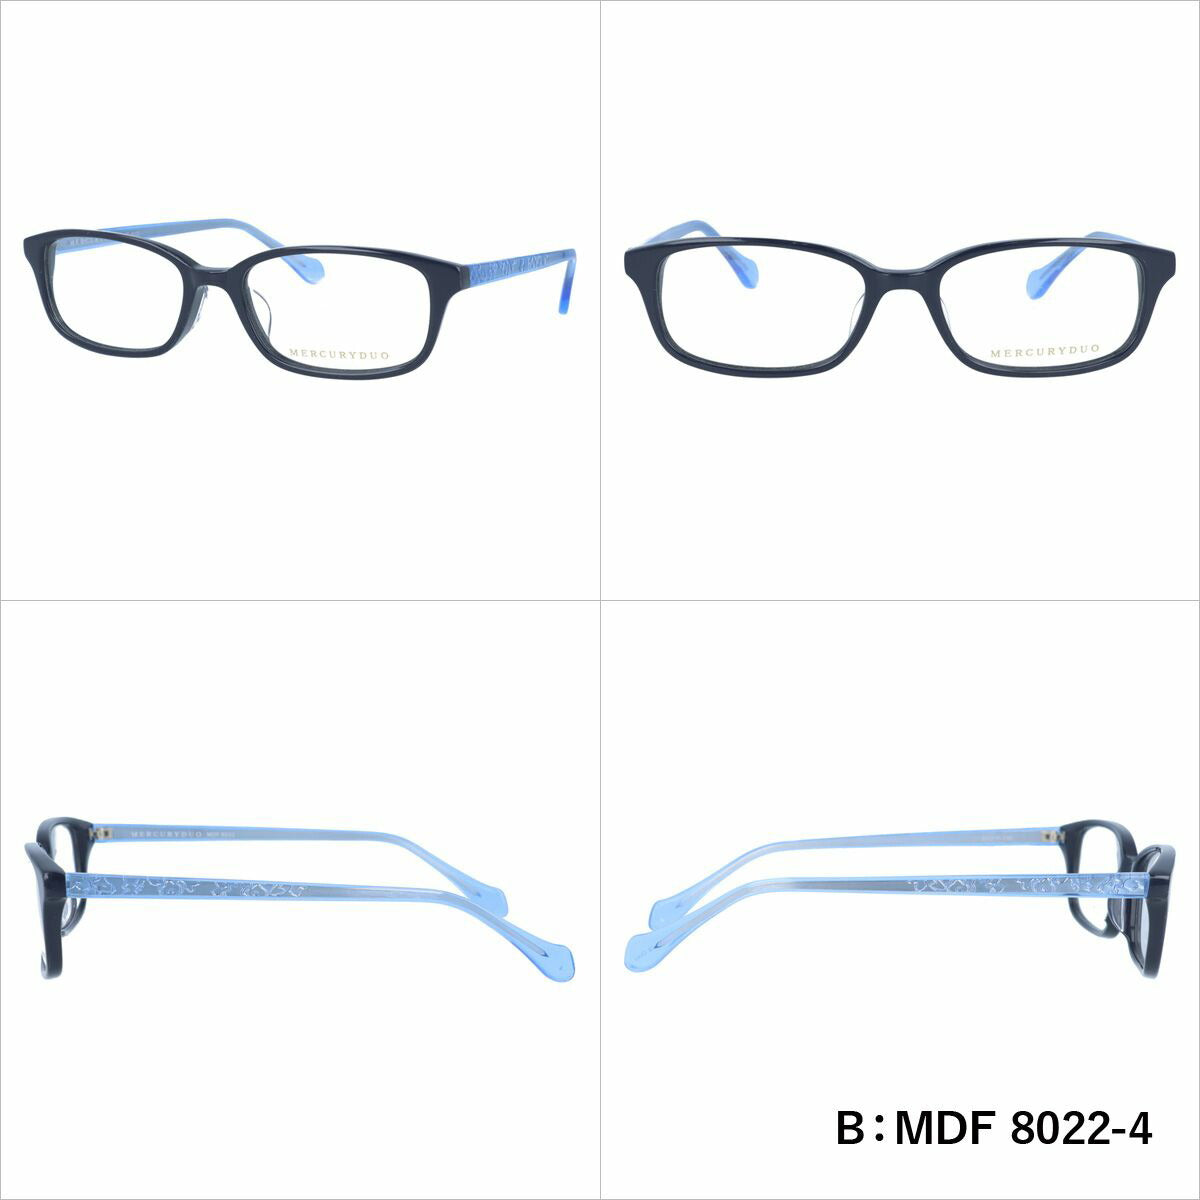 マーキュリーデュオ リーディンググラス フレーム レディース ブランド 度付き 度入り メガネ 眼鏡 アジアンフィット MERCURYDUO MDF 8006-3 / MDF 8022-4 / MDF 8019-4 レディース 女性 プレゼント